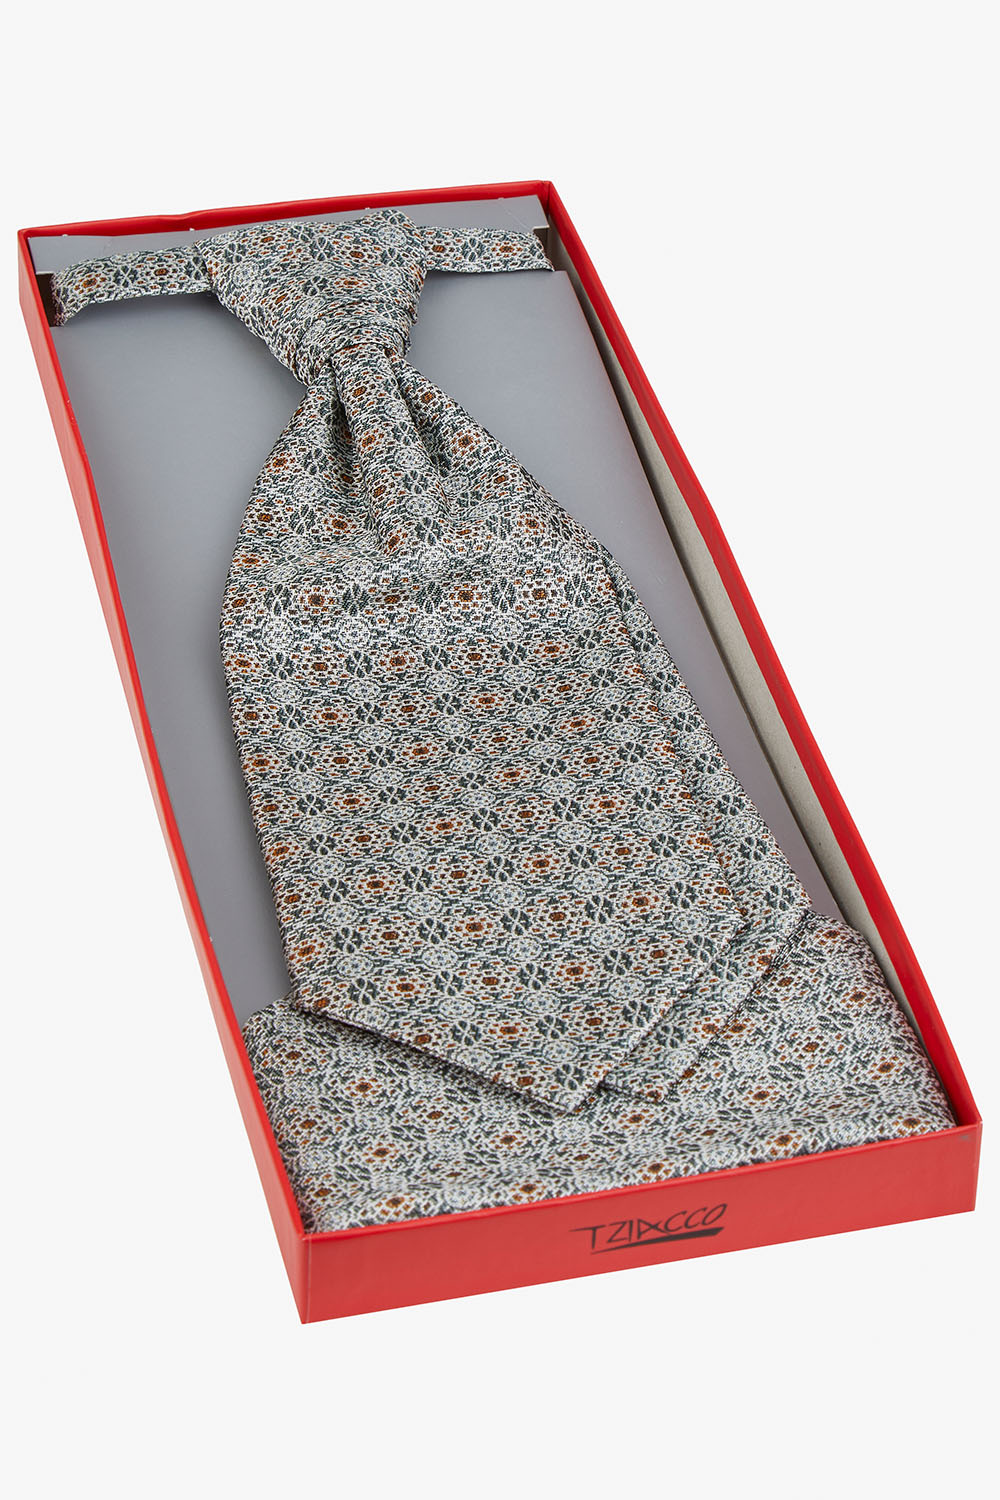 TZIACCO világoszöld francia nyakkendő szett díszdobozban 597201-45